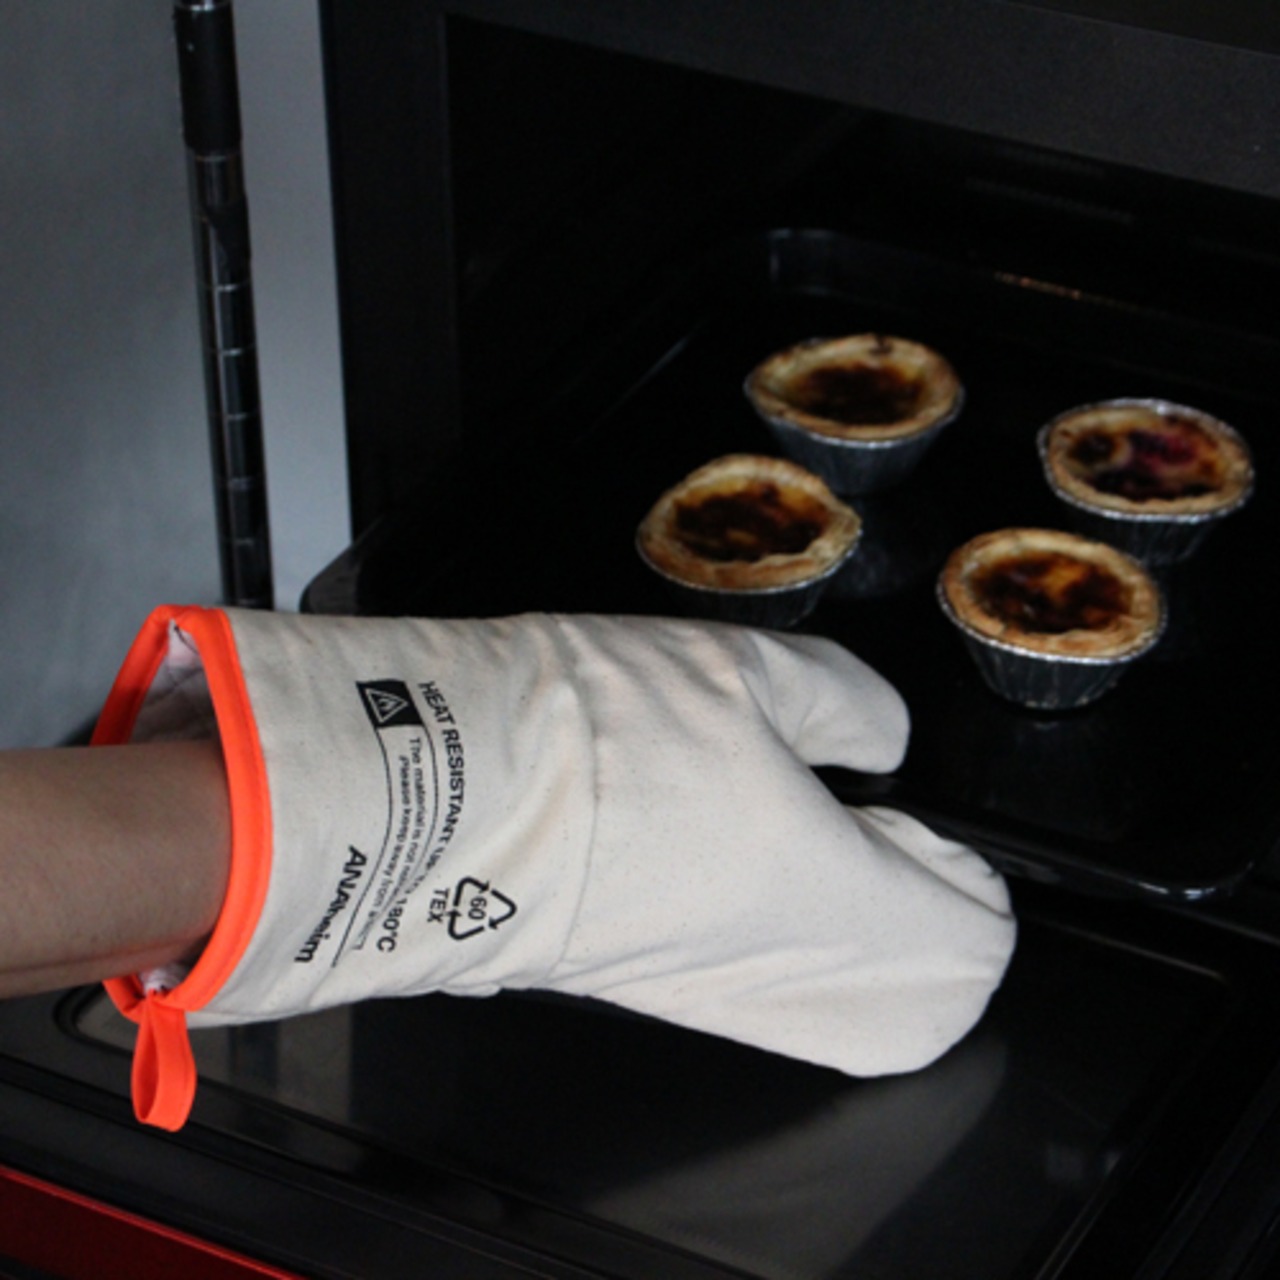 Anaheim Oven Glove “Orange”/オーブングローブ/キッチン